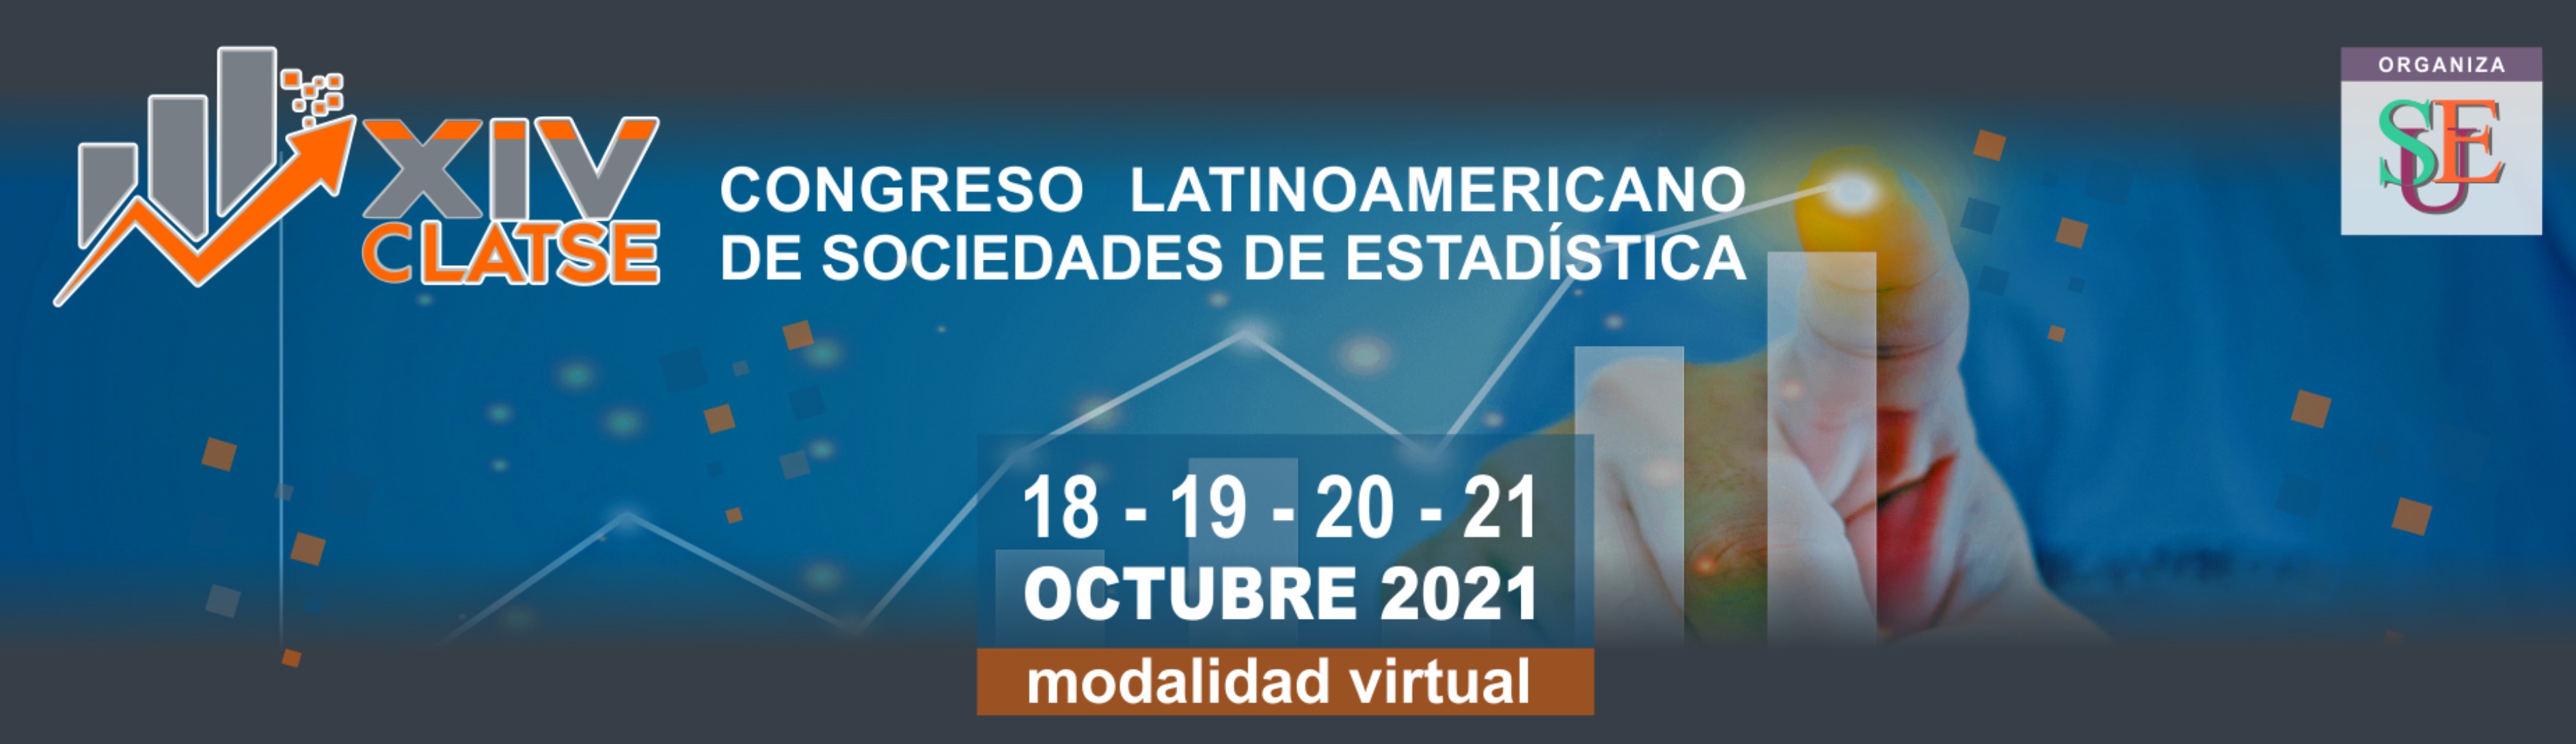 Dra. Yolanda Gómez será miembro del comité científico del Congreso Latinoamericano de Sociedades de Estadística